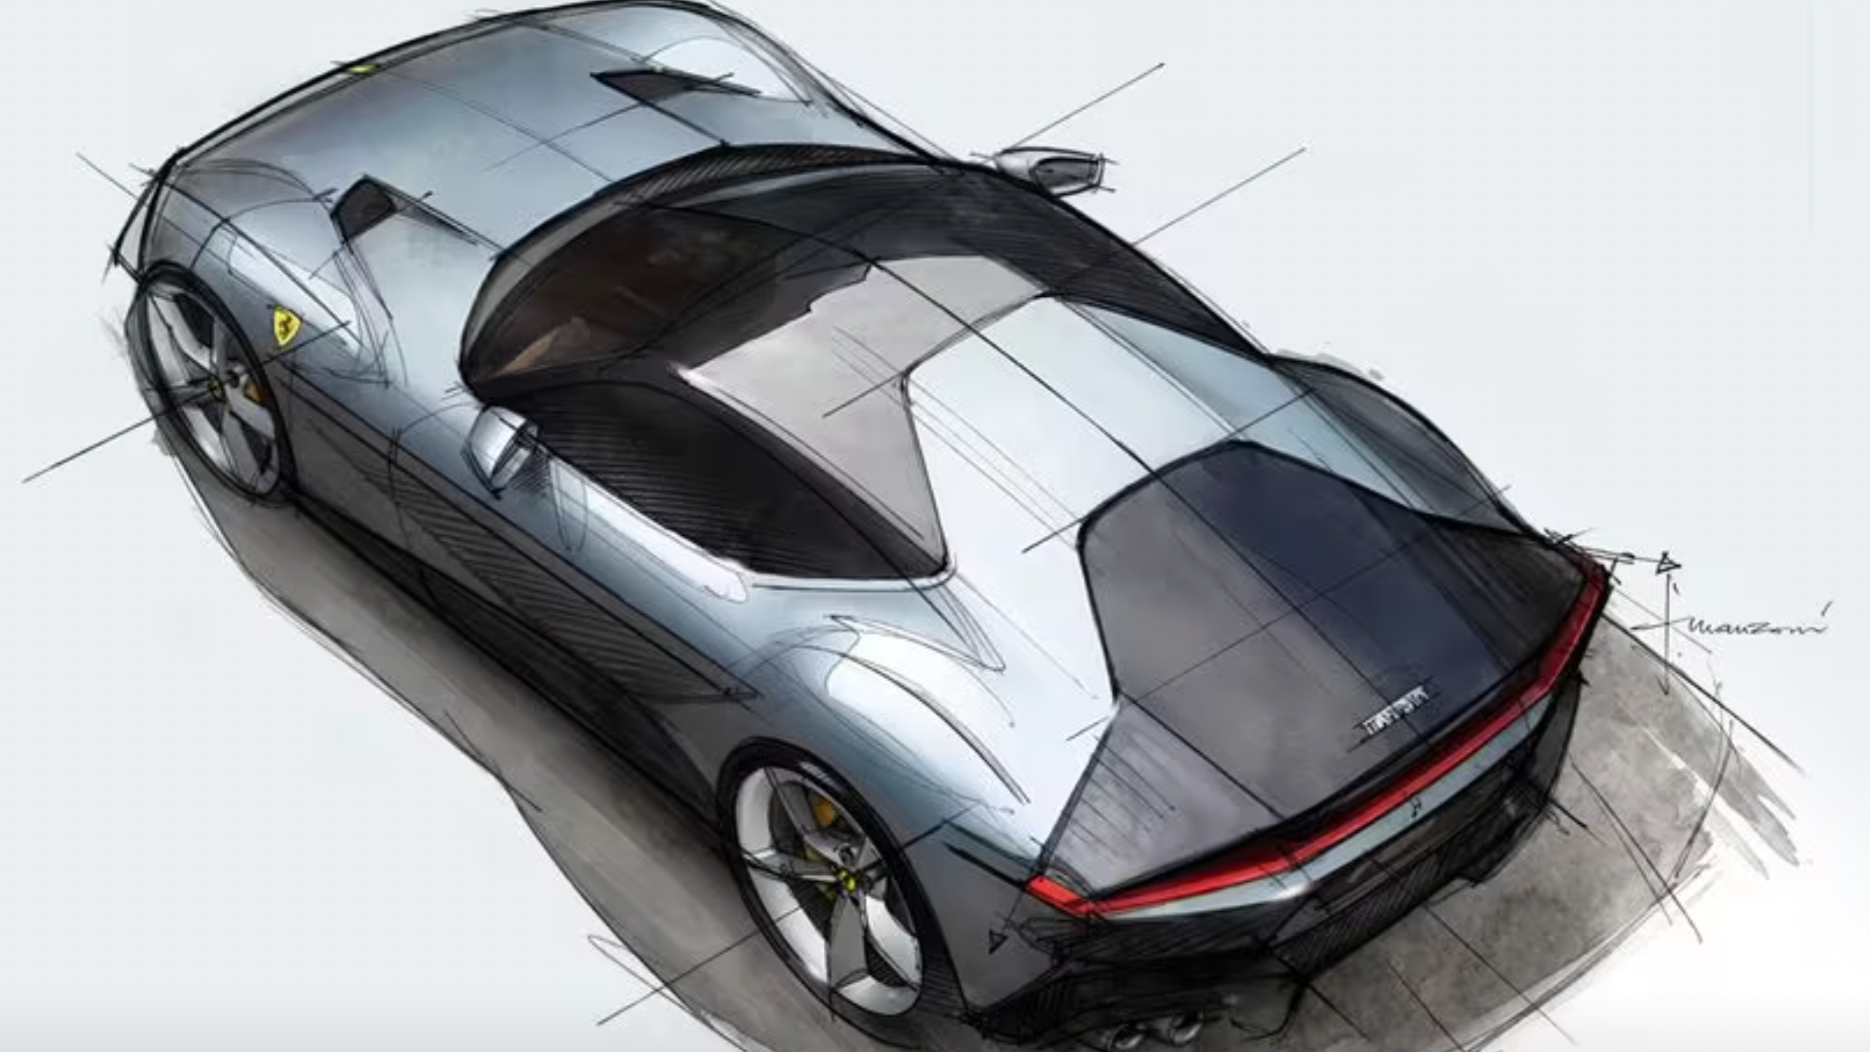 Ferrari 12Cilindri: A Bold New Design Language for the Future